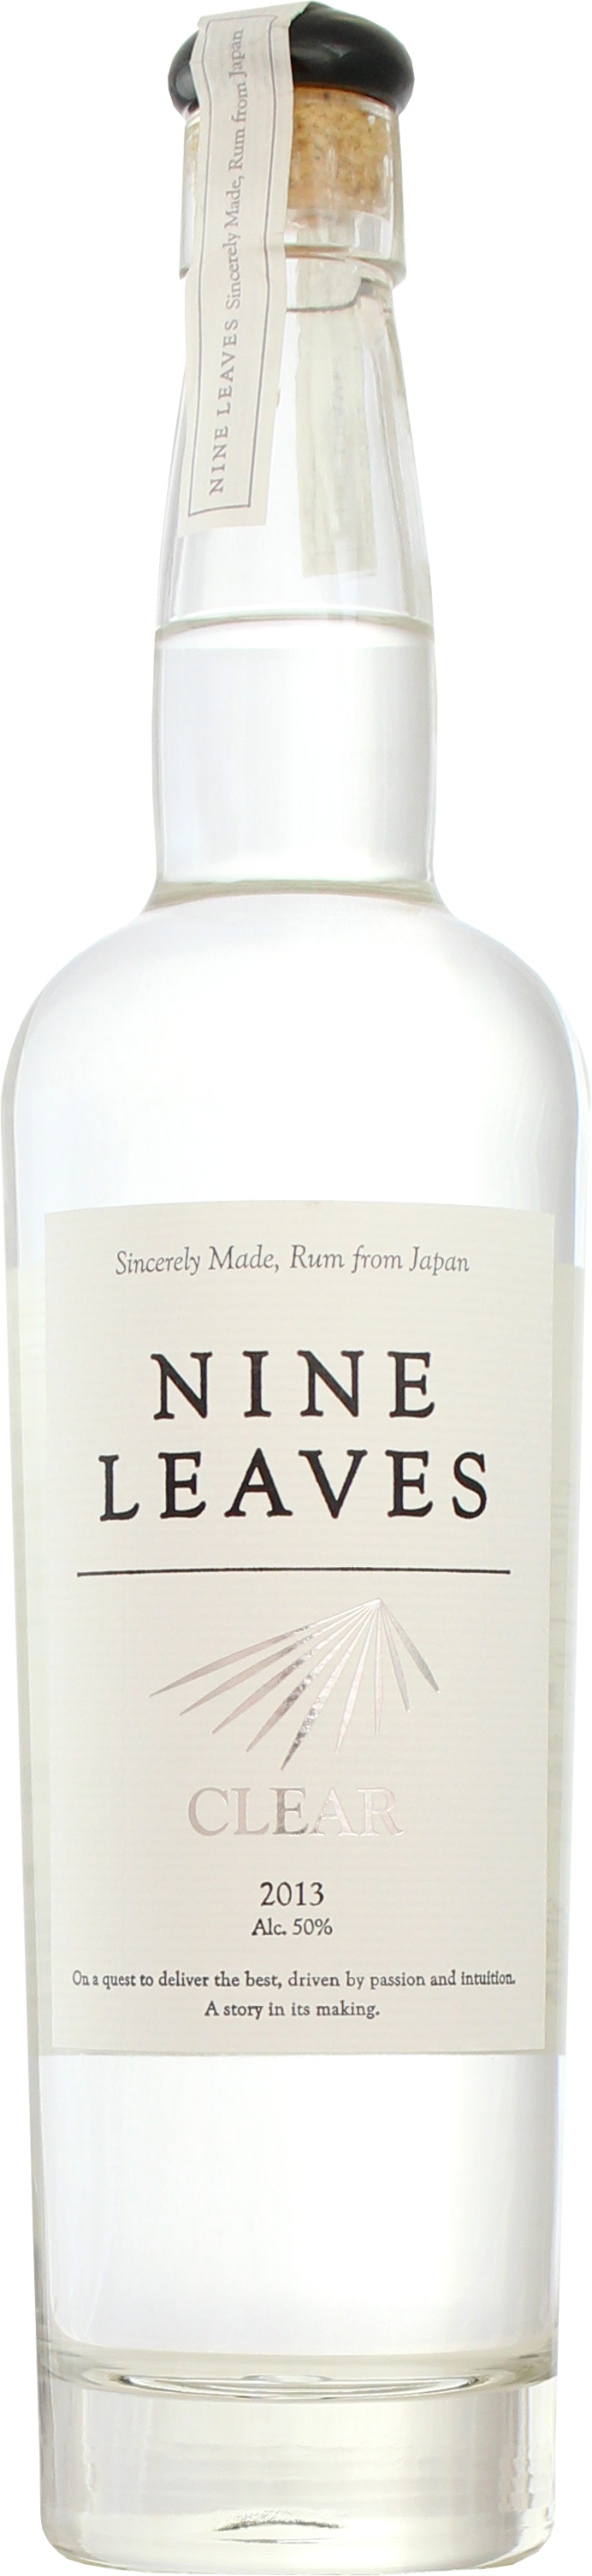 Tokyo Nights Japanese Rum - le rhum venu tout droit du Japon